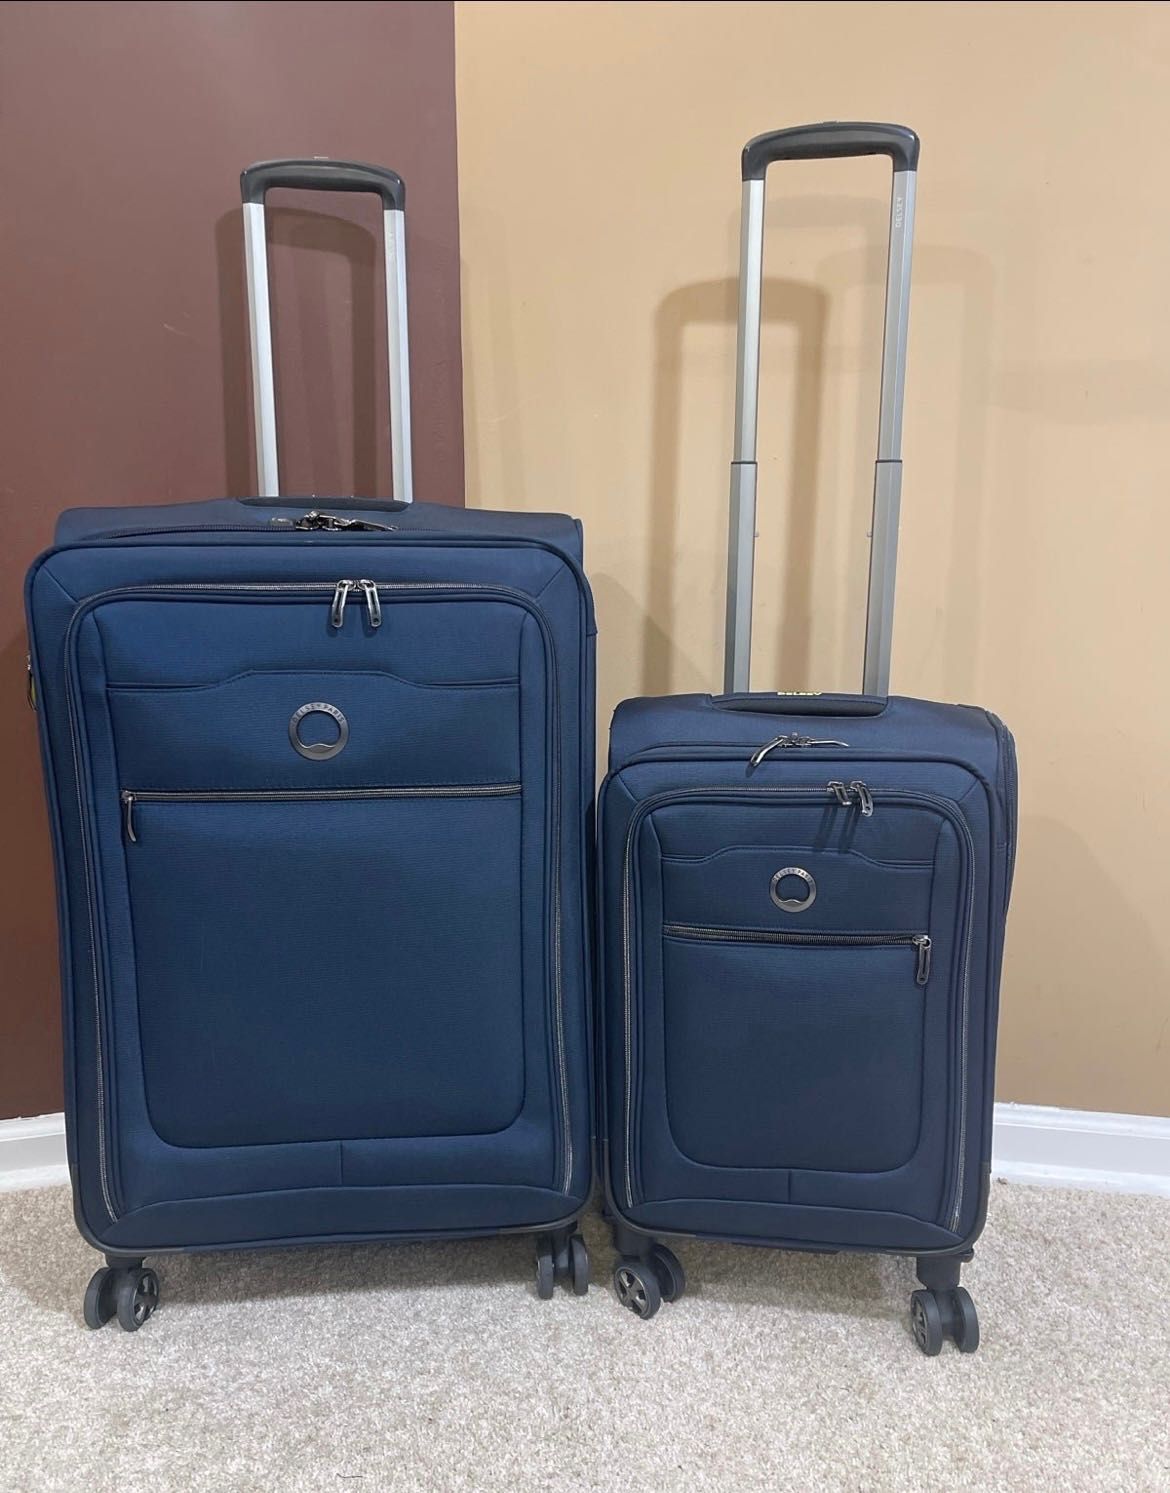 Комплект валіз Delsey Paris Spinner Валіза + ручна поклажа, синій, США